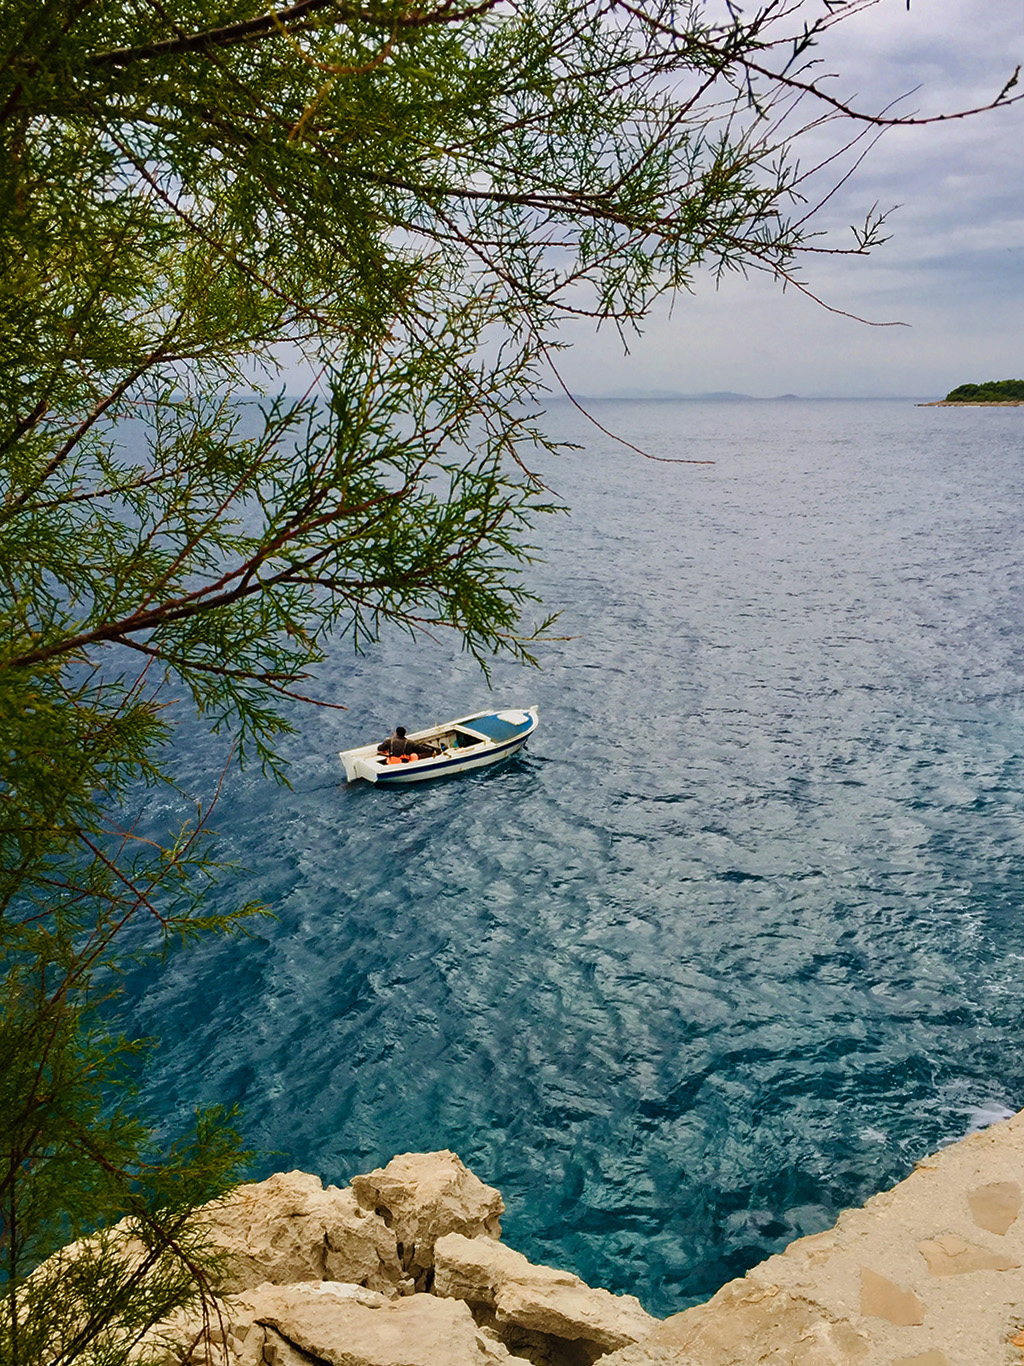 Chorvatské moře je zkrátka jedno z nejkrásnějších na světě